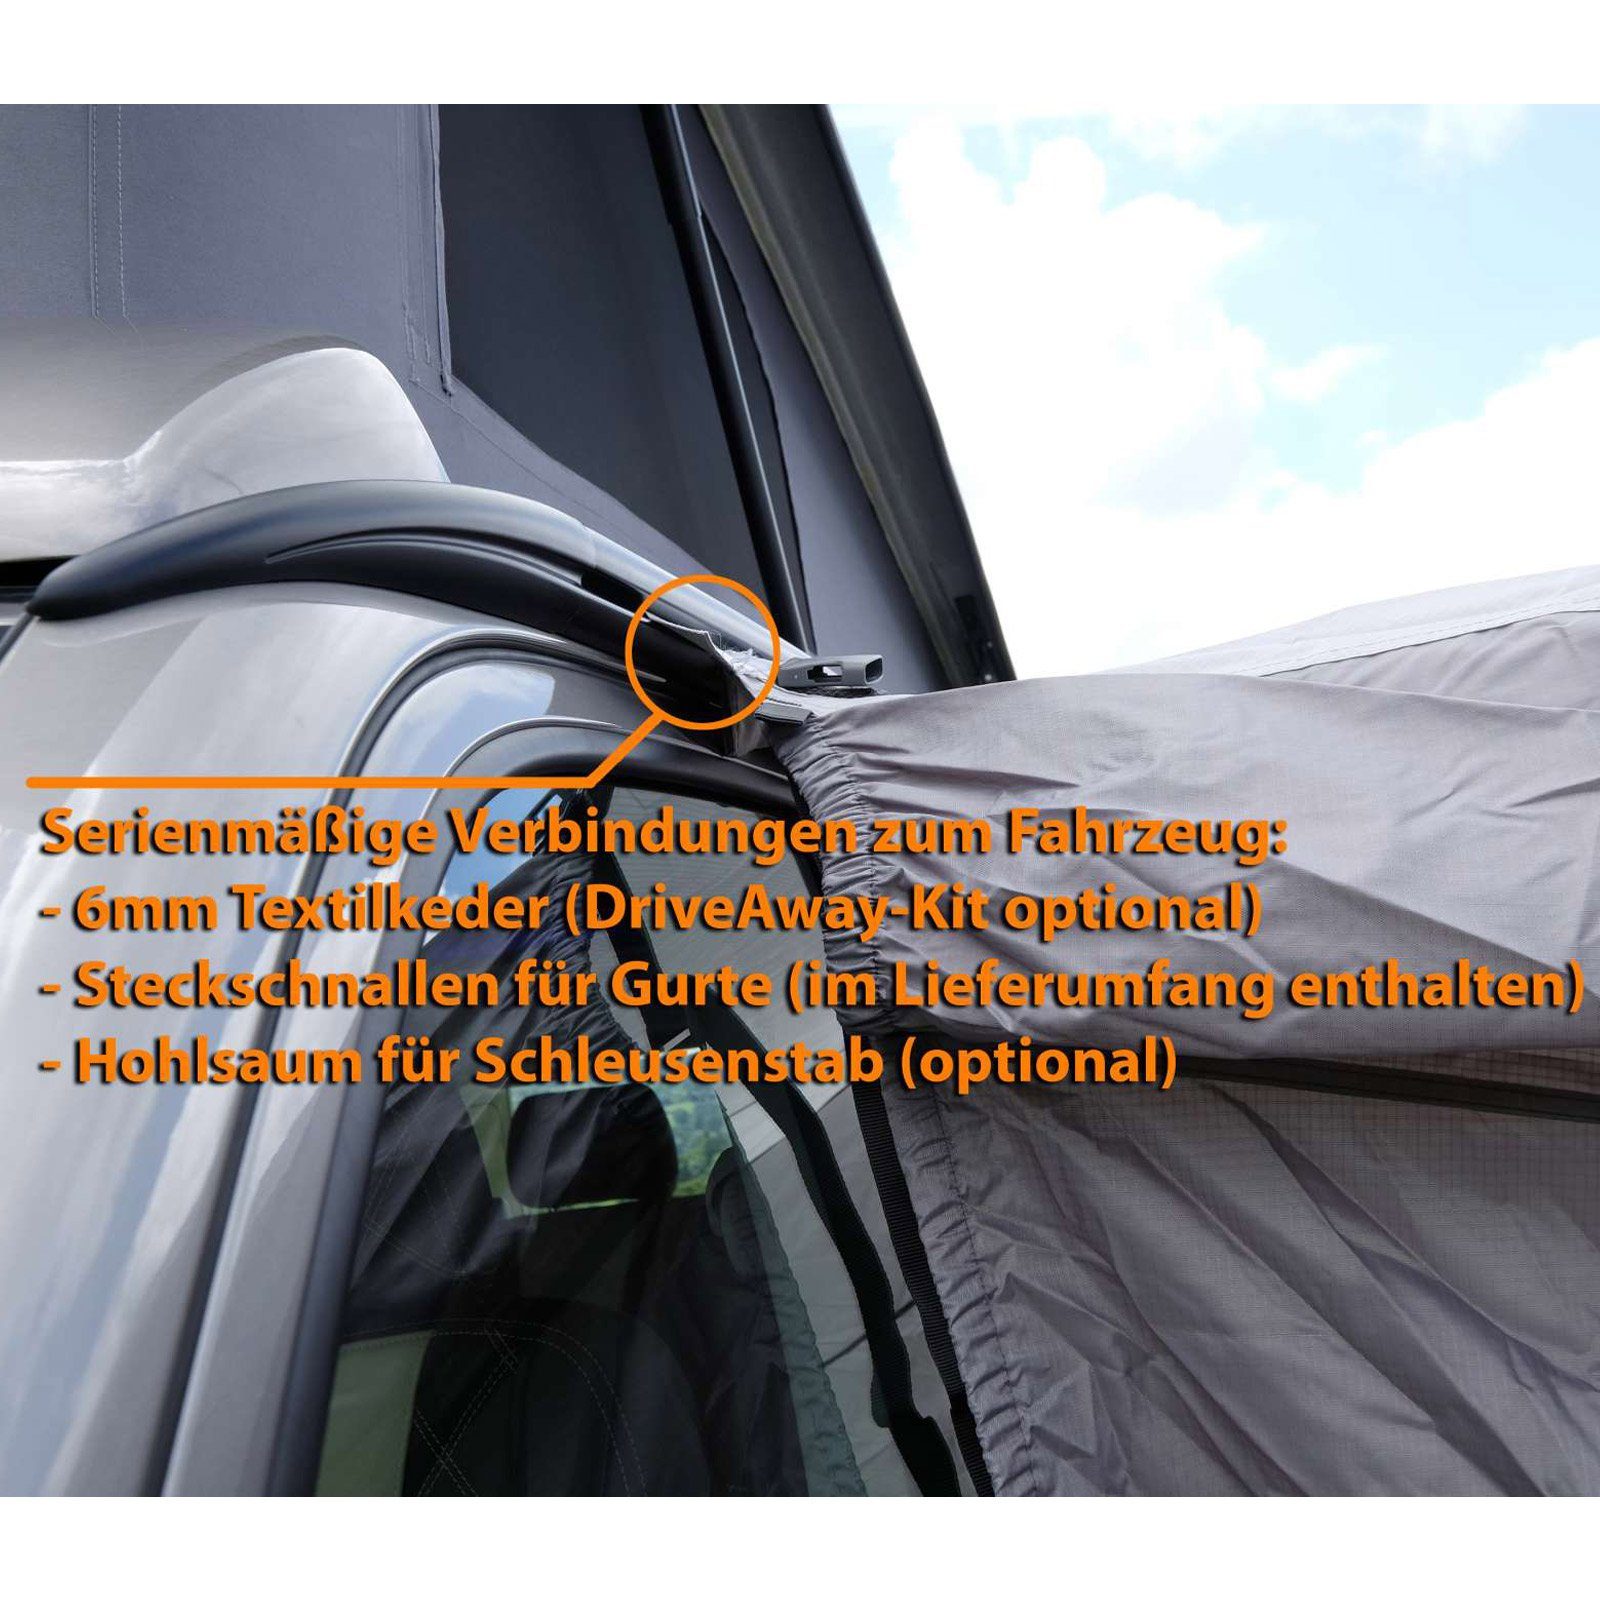 Van Vorzelt Kela Airbeam Camping, Tall Aufblasbar Bus Vango Zelt Auto Luft Zelt V Air aufblasbares